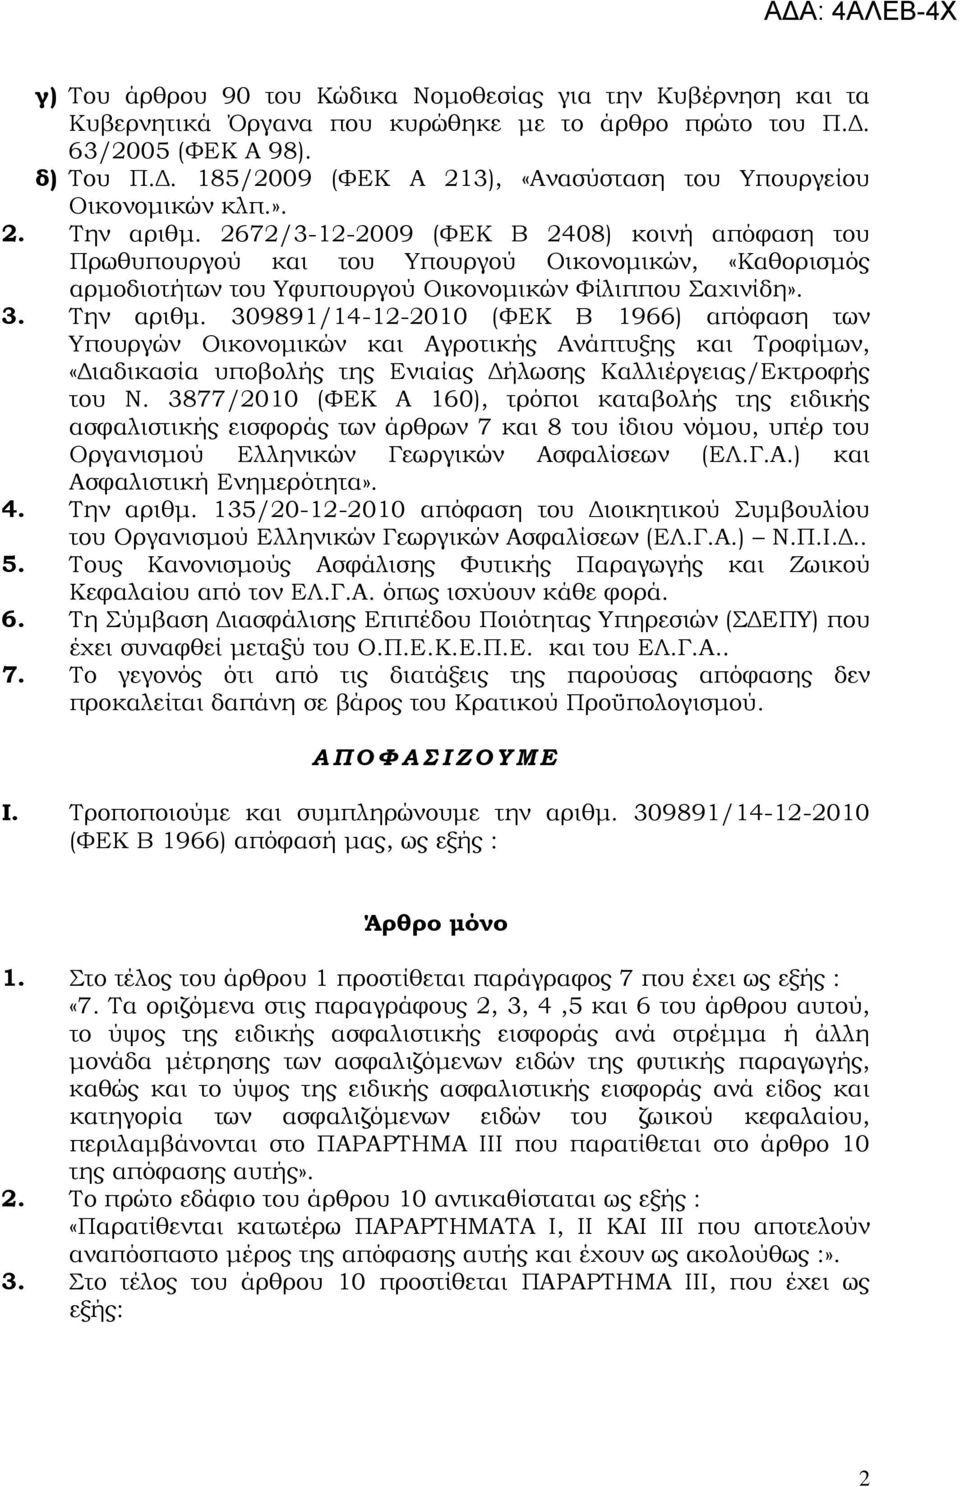 3877/2010 (ΦΕΚ Α 160), τρόποι καταβολής της ειδικής ασφαλιστικής εισφοράς των άρθρων 7 και 8 του ίδιου νόμου, υπέρ του Οργανισμού Ελληνικών Γεωργικών Ασφαλίσεων (ΕΛ.Γ.Α.) και Ασφαλιστική Ενημερότητα».